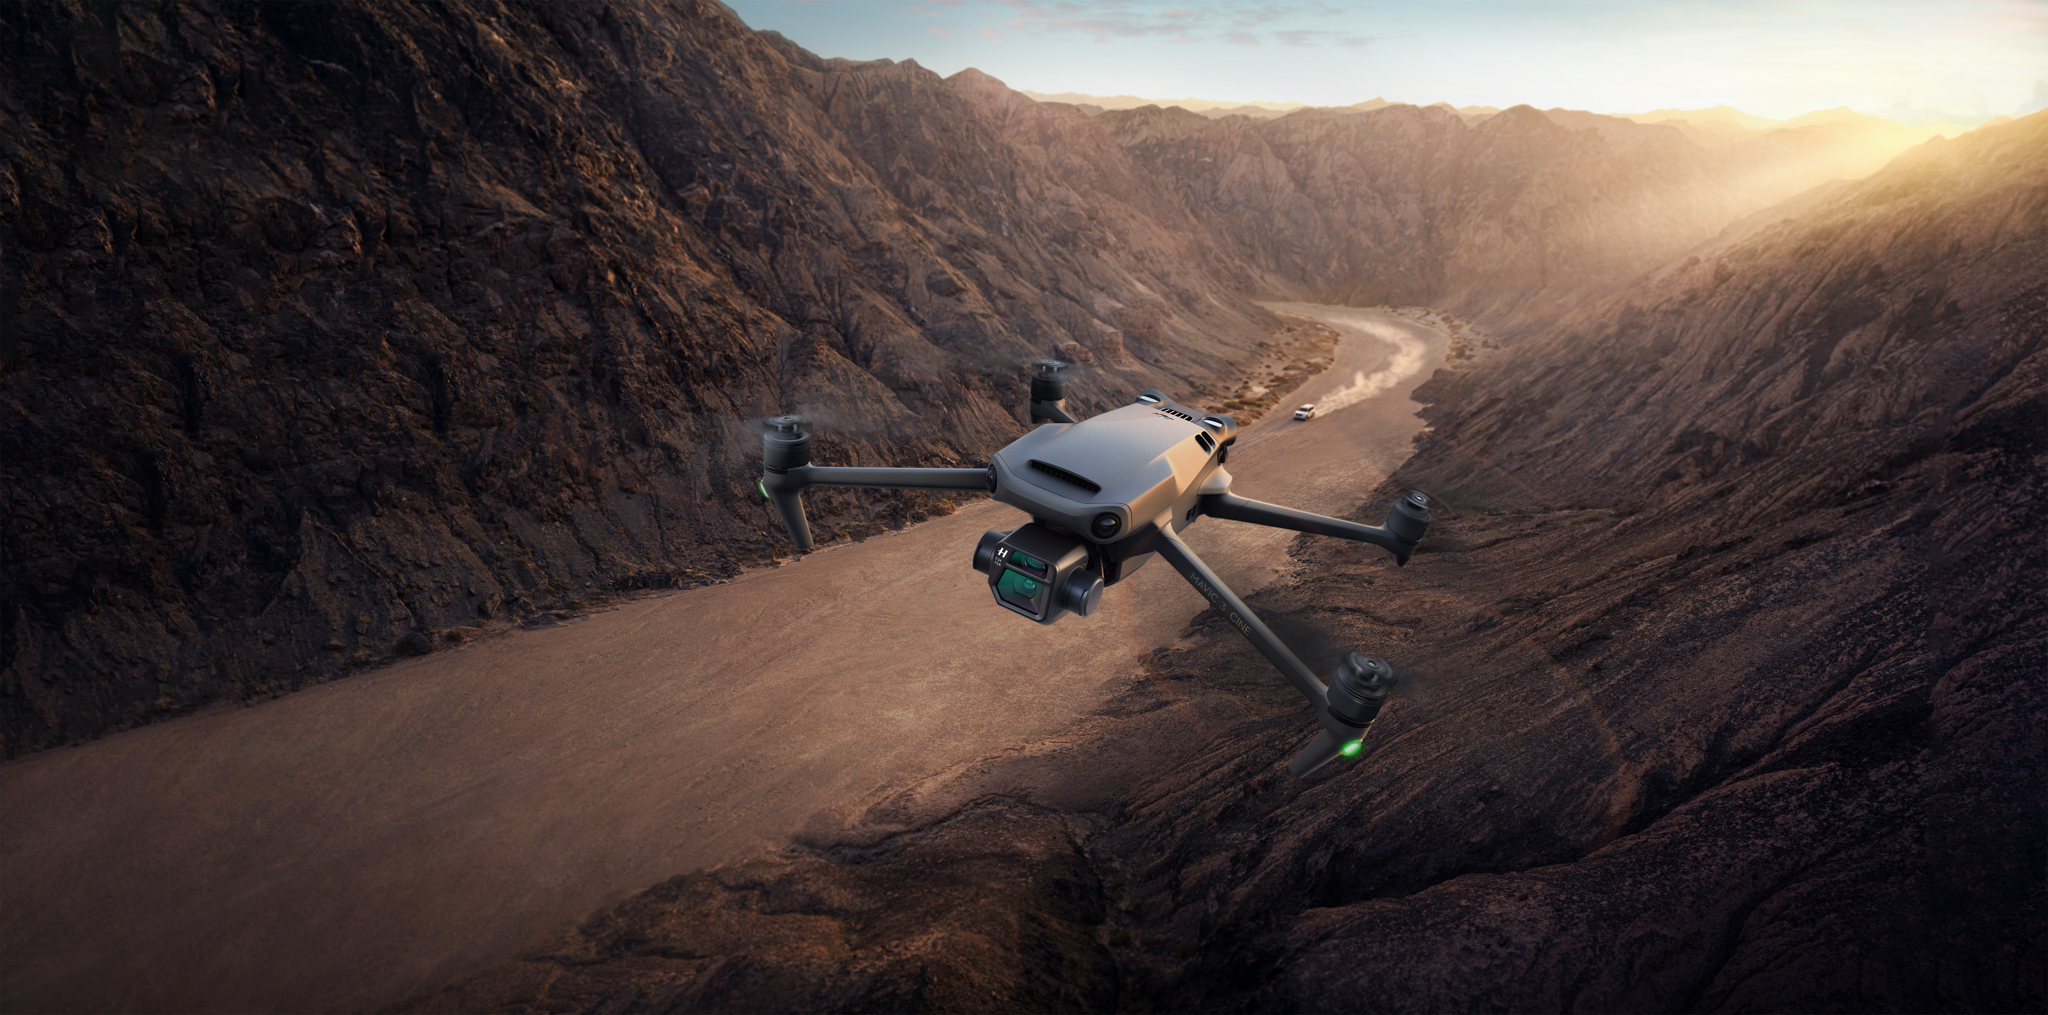 Mavic 3 : DJI annonce son nouveau drone aux caméras impressionnantes